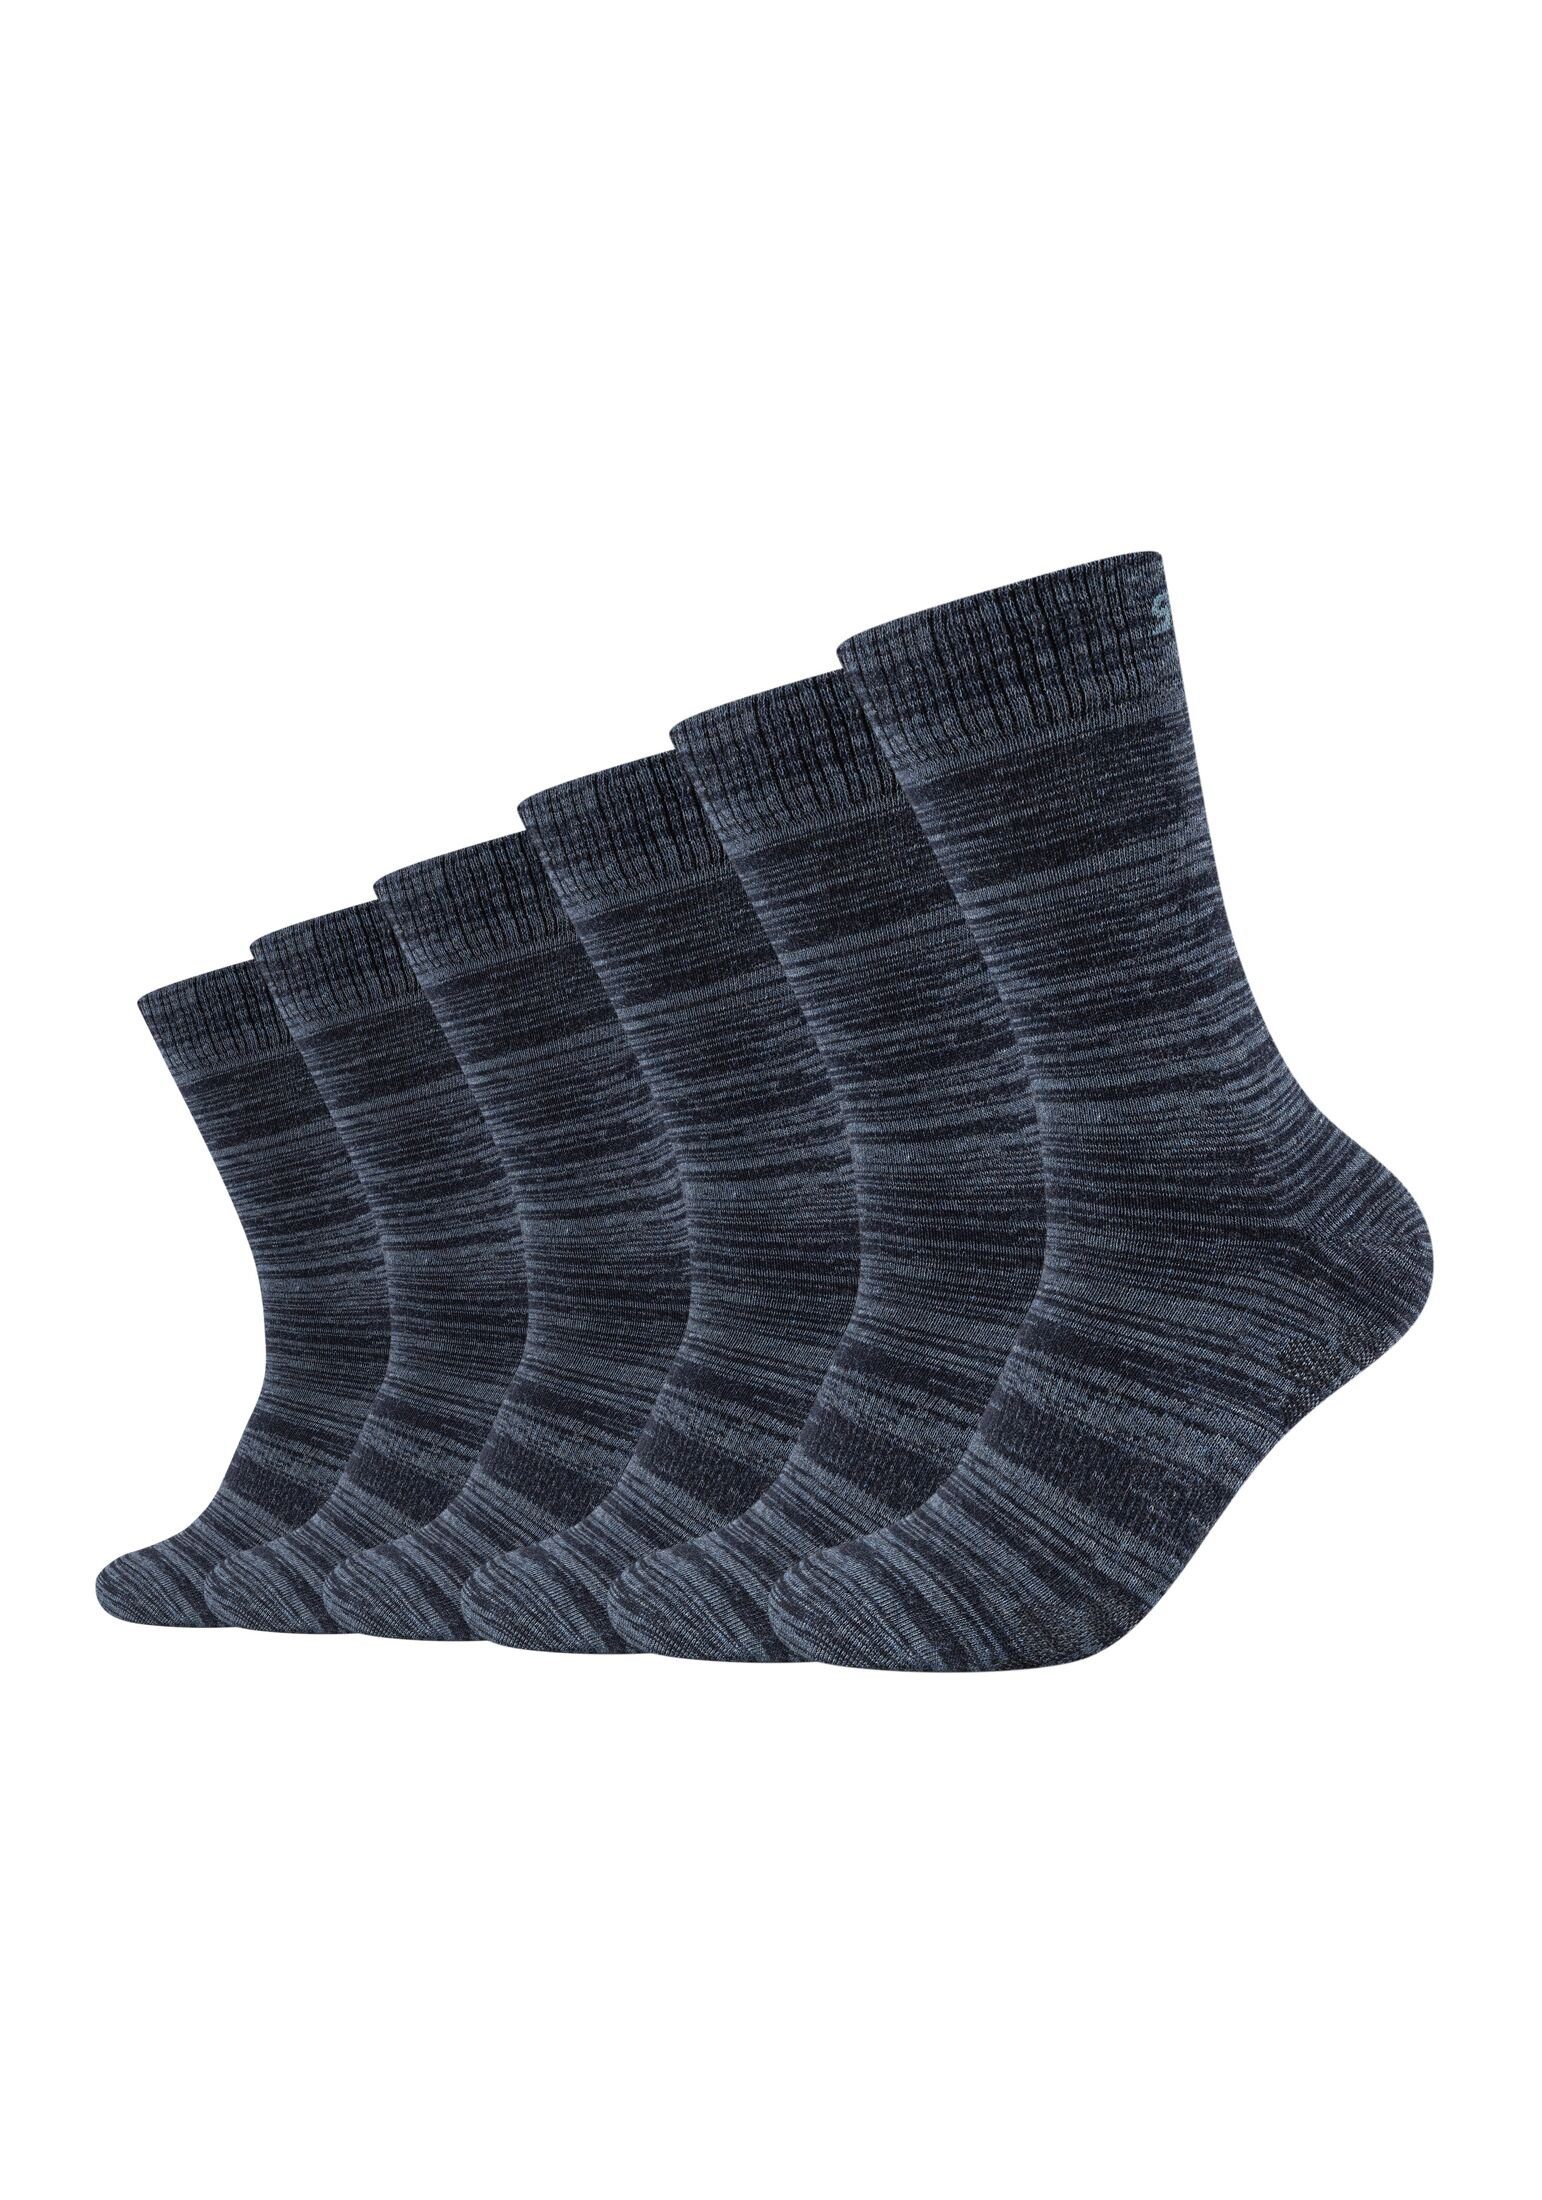 Skechers Socken (6-Paar) im praktischen 6er Pack, Dank hohem Baumwollanteil  äußerst angenehm zu tragen